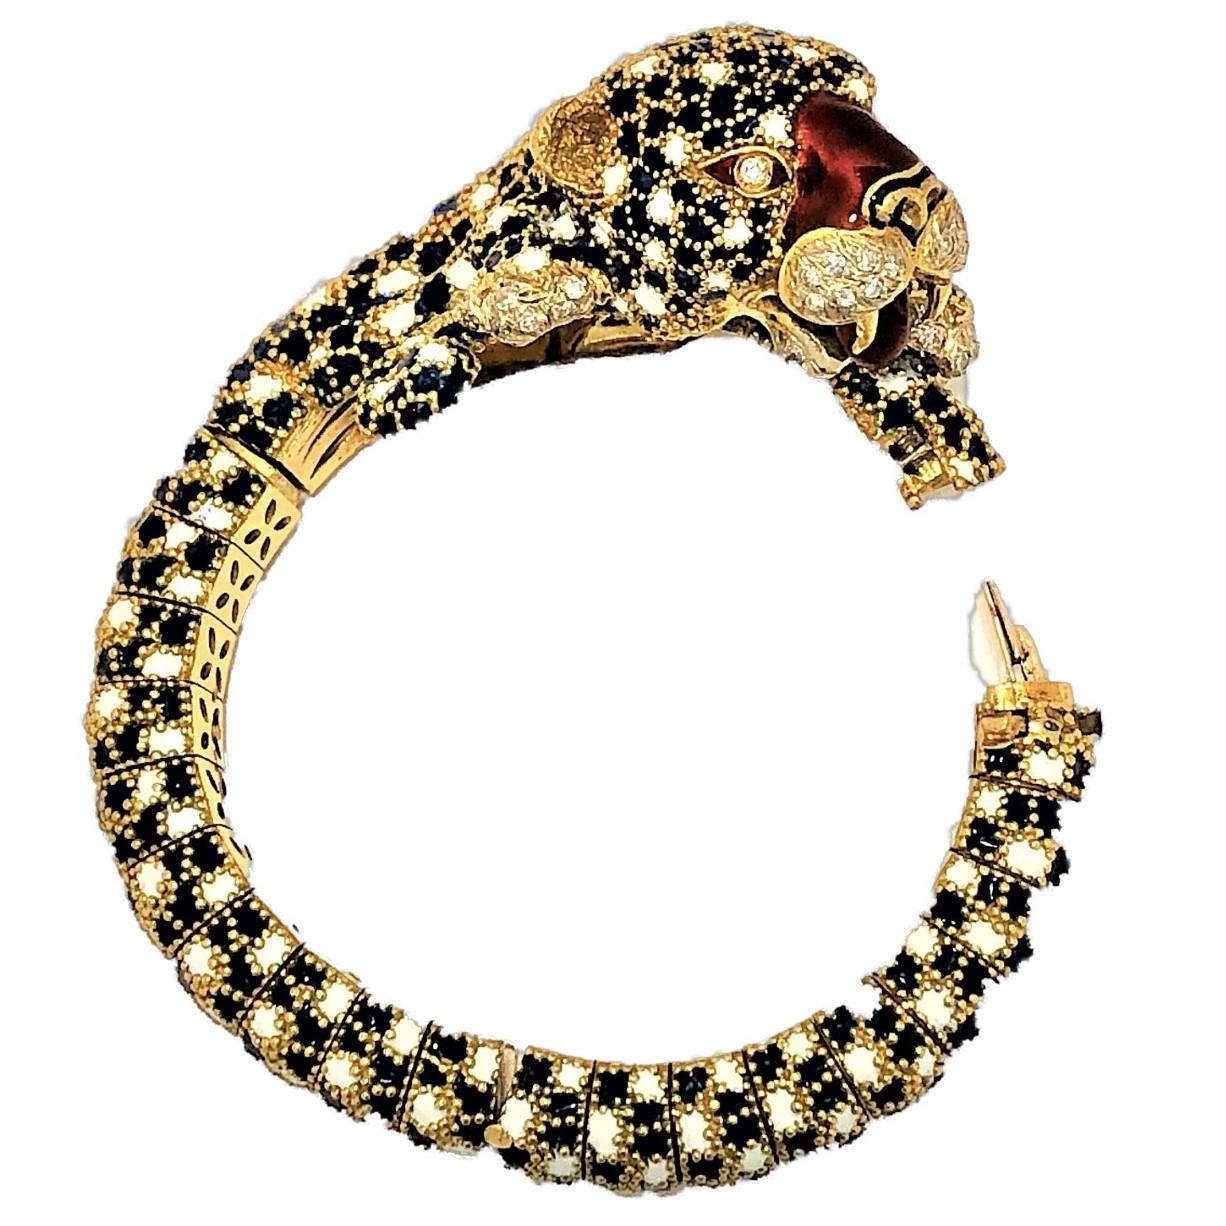 Women's Frascarolo Leopard Bracelet with Enamel and Diamonds